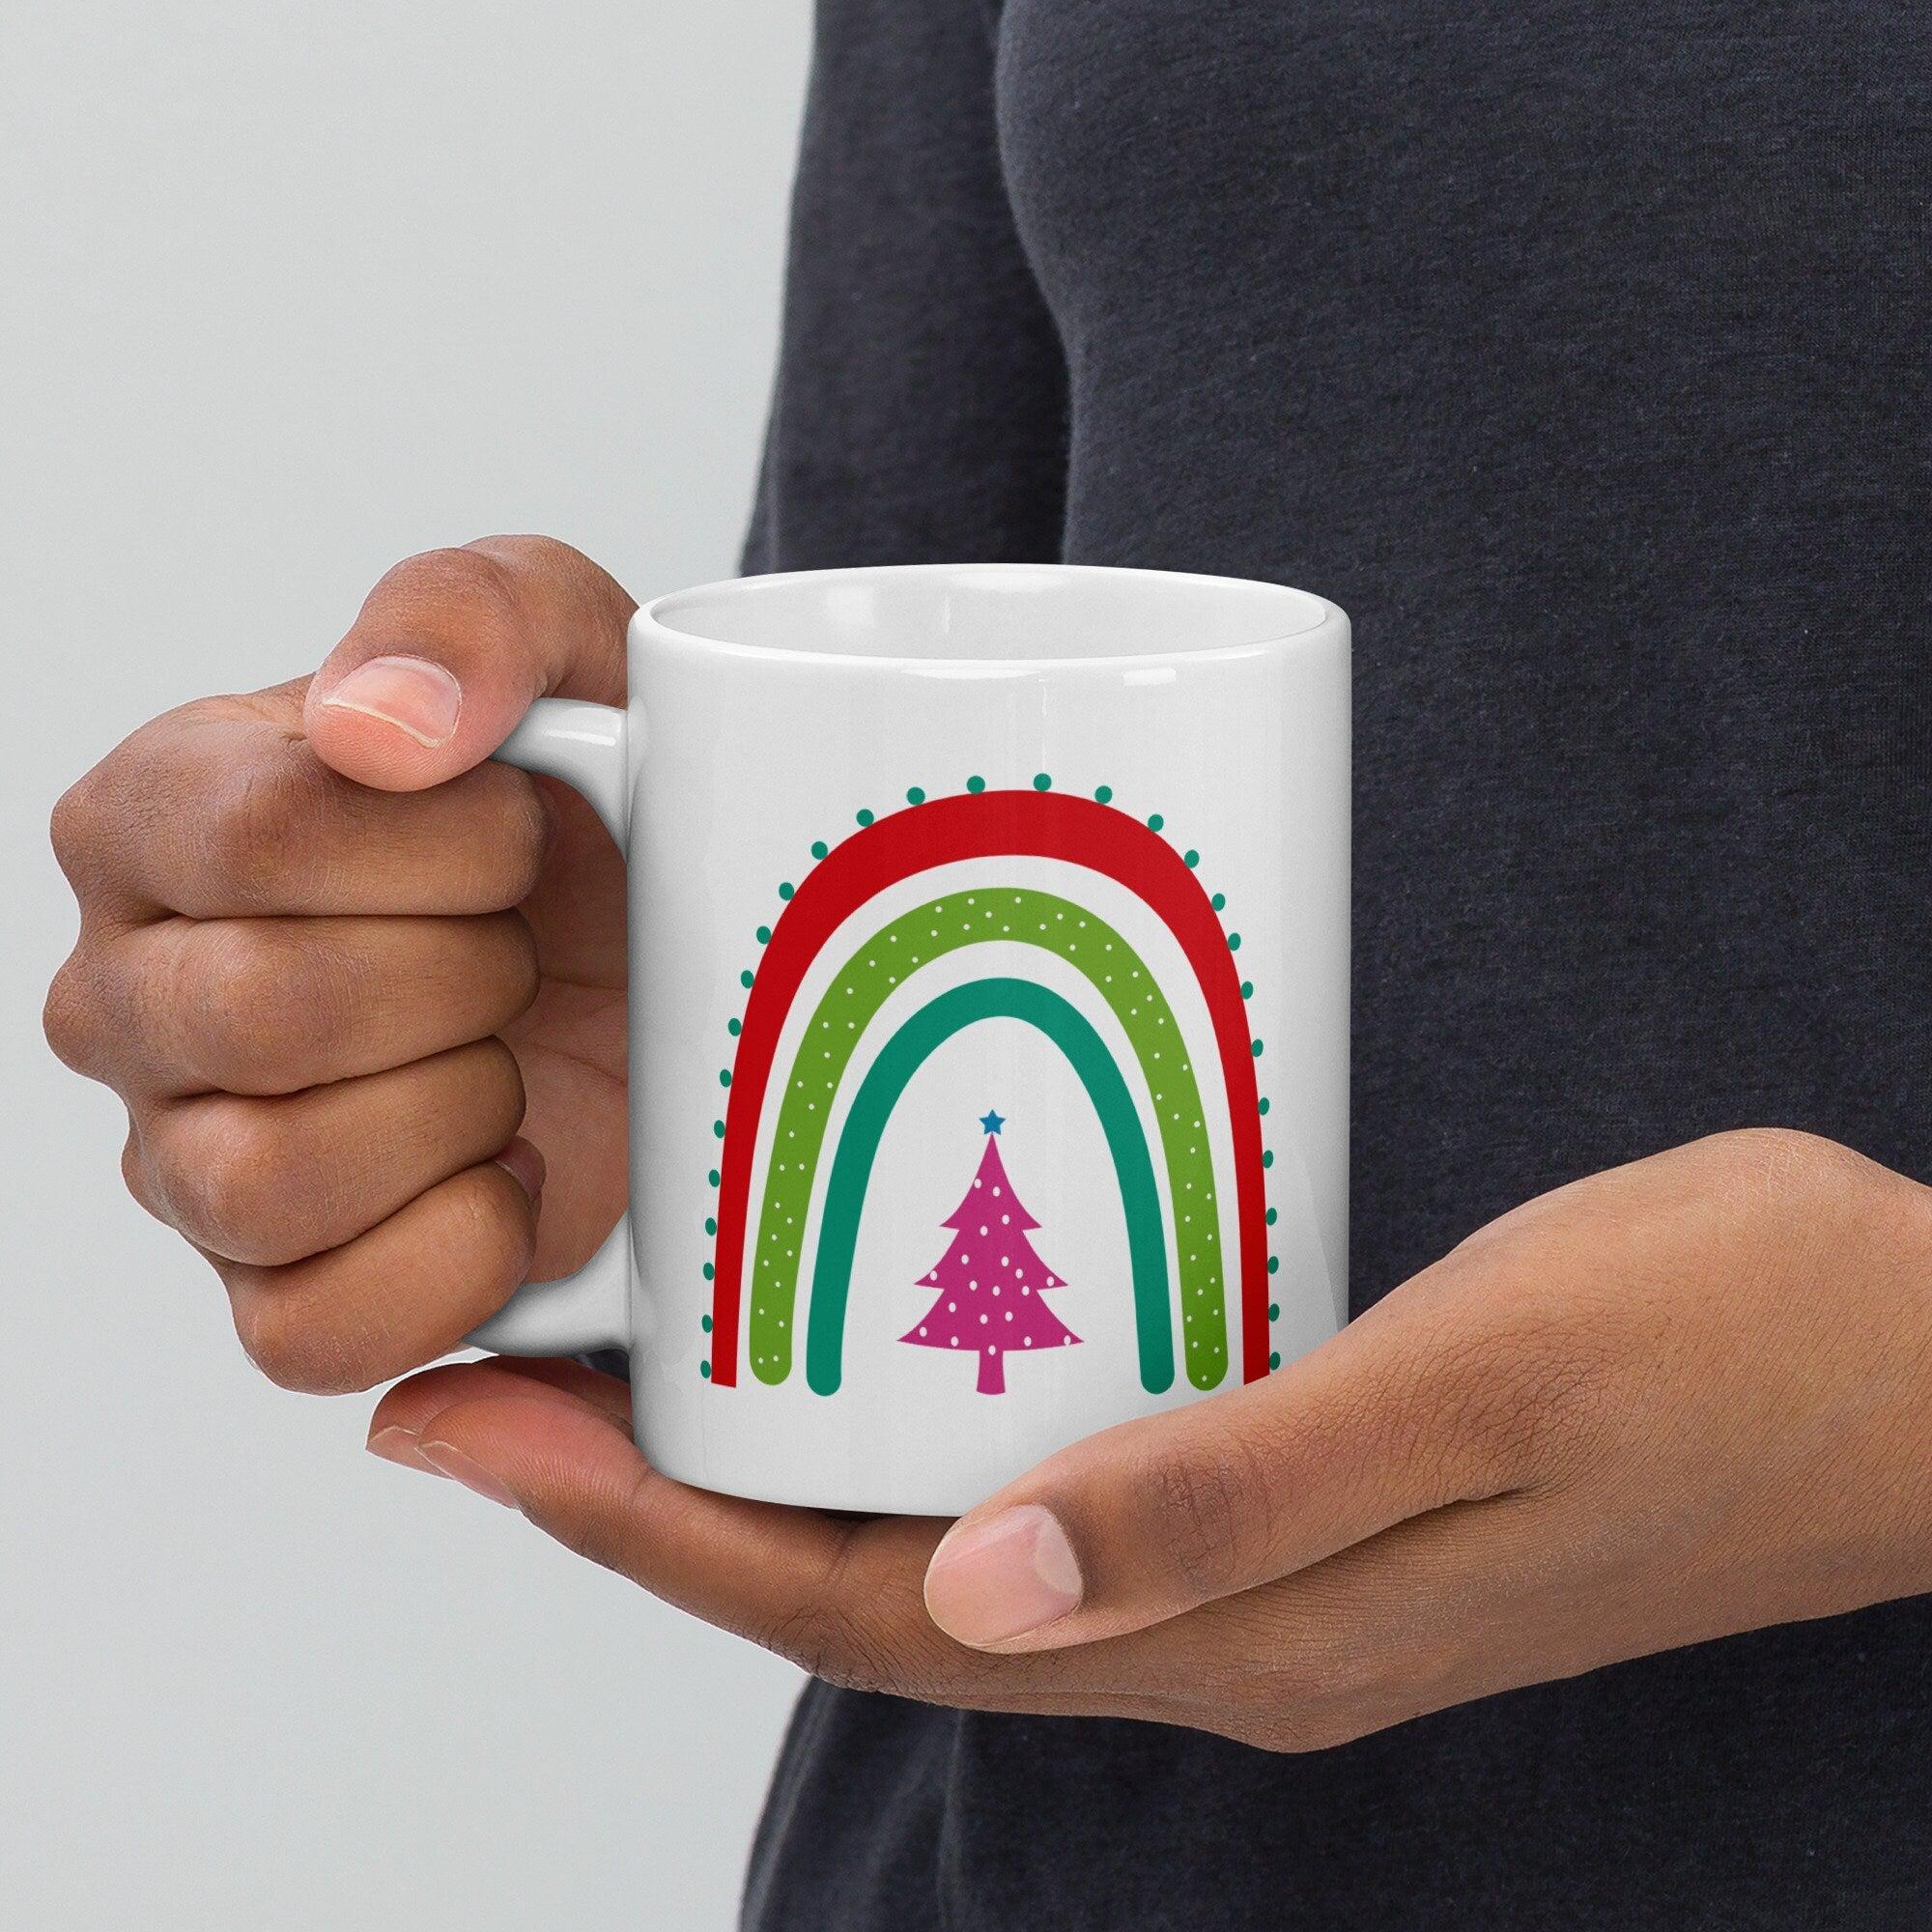 Rainbow Christmas Tree Coffee Mug Salt and Sparkle